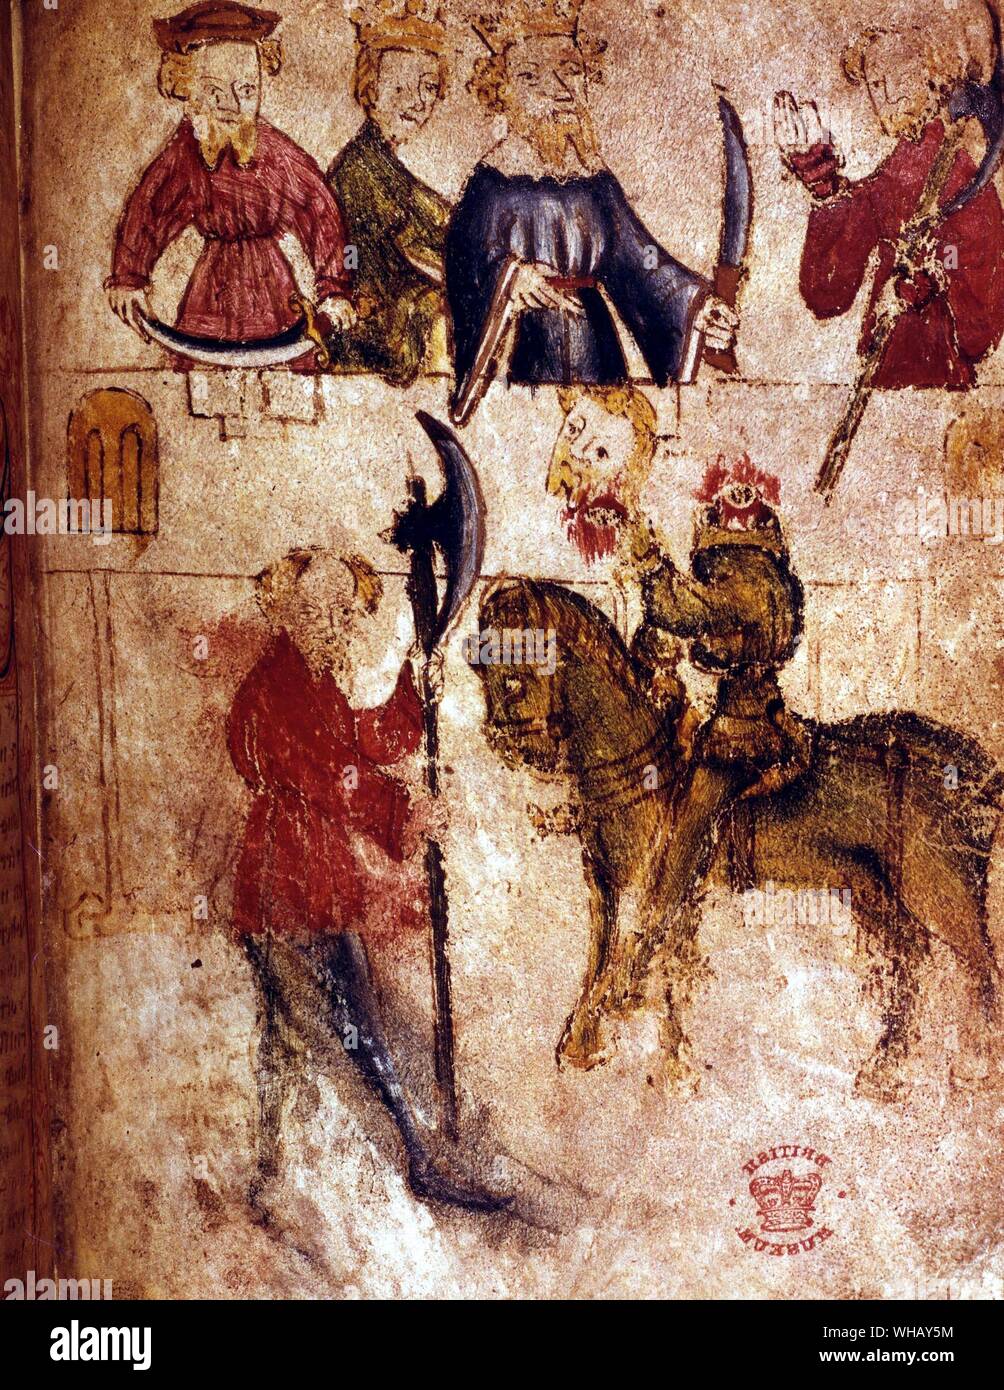 Sir Bertilak décapité par Sir Gawaine de Sir Gawaine et le chevalier vert. Le Roi Arthur, page 128.. Sir Gawain et le chevalier vert est un fin du 14ème siècle les romantiques. Le noyau de l'histoire est le thème central, tête coupée à la mythologie celtique, bien qu'il est aussi infuenced par des événements de l'époque, tels que la mort noire.. Banque D'Images